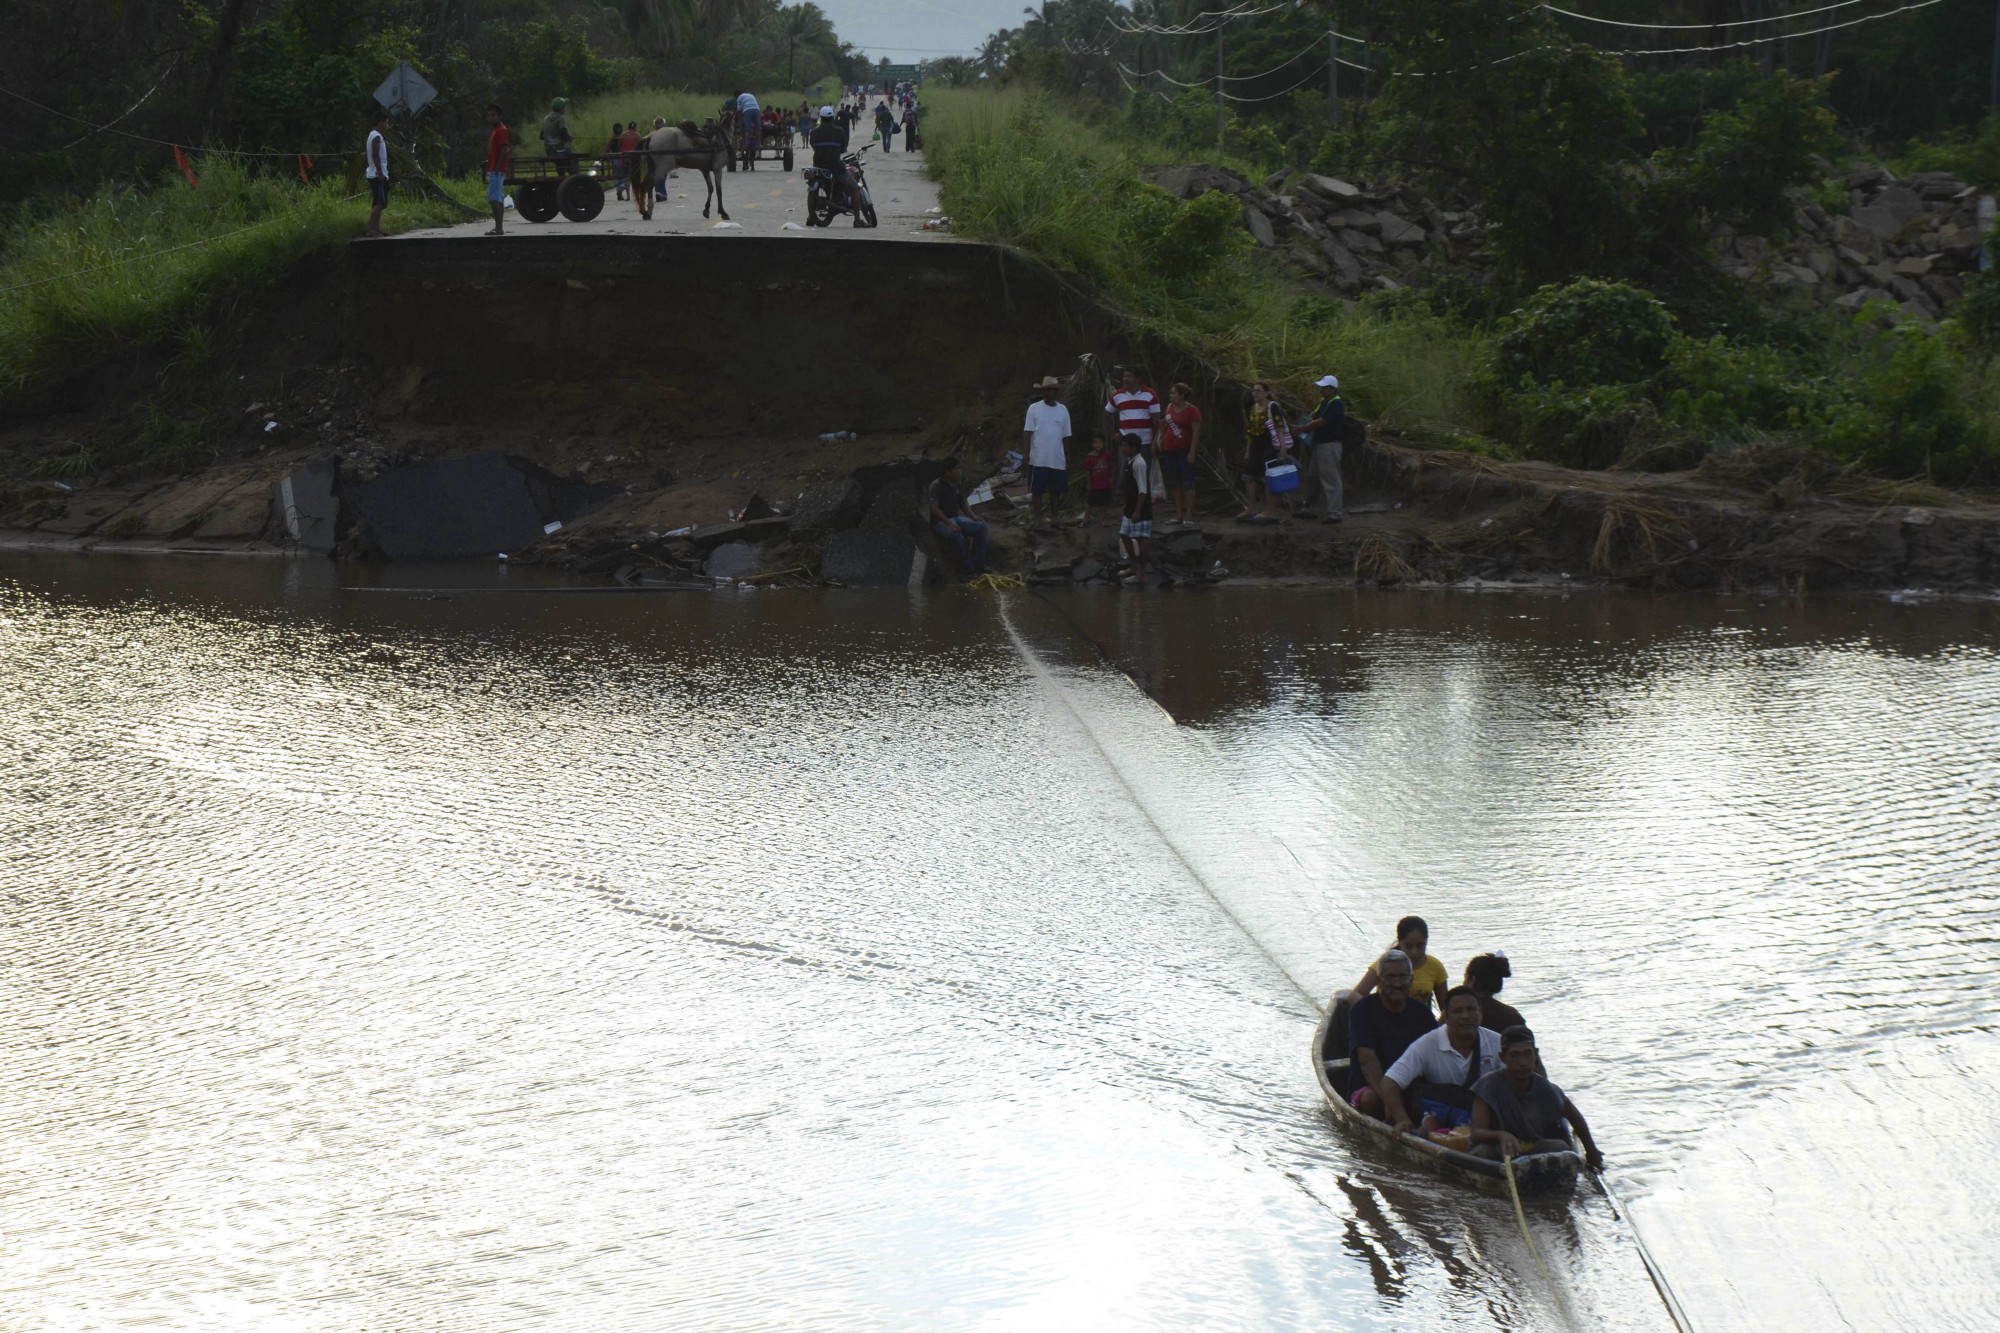 Gente cruza en un bote después de que se colapsara un puente en las cercanías de Atoyac. Esto fue provocado por los huracanes Ingrid y Manuel, que llevaron a la muerte a cientos de personas.